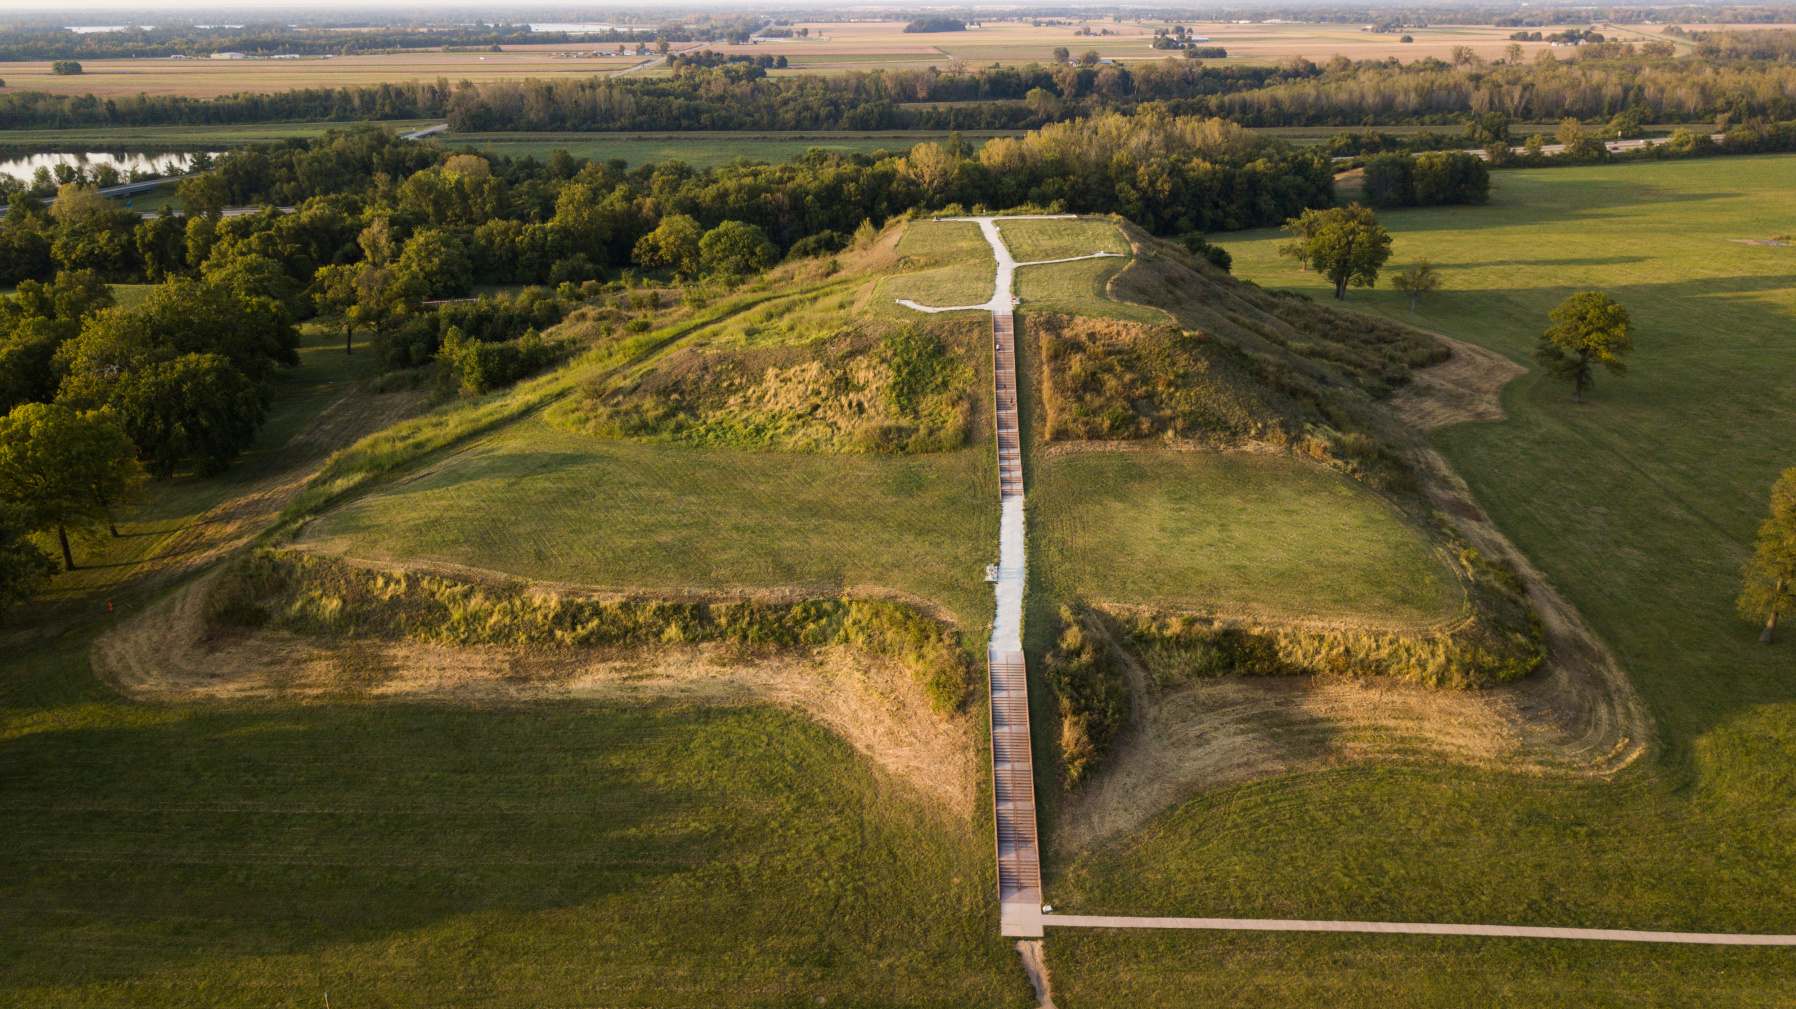 Monks Mound, construído entre 950 e 1100 dC e localizado no Patrimônio Mundial da UNESCO de Cahokia Mounds, perto de Collinsville, Illinois, é a maior terraplenagem pré-colombiana na América ao norte da Mesoamérica. Várias culturas pré-colombianas são coletivamente denominadas "construtores de montes".